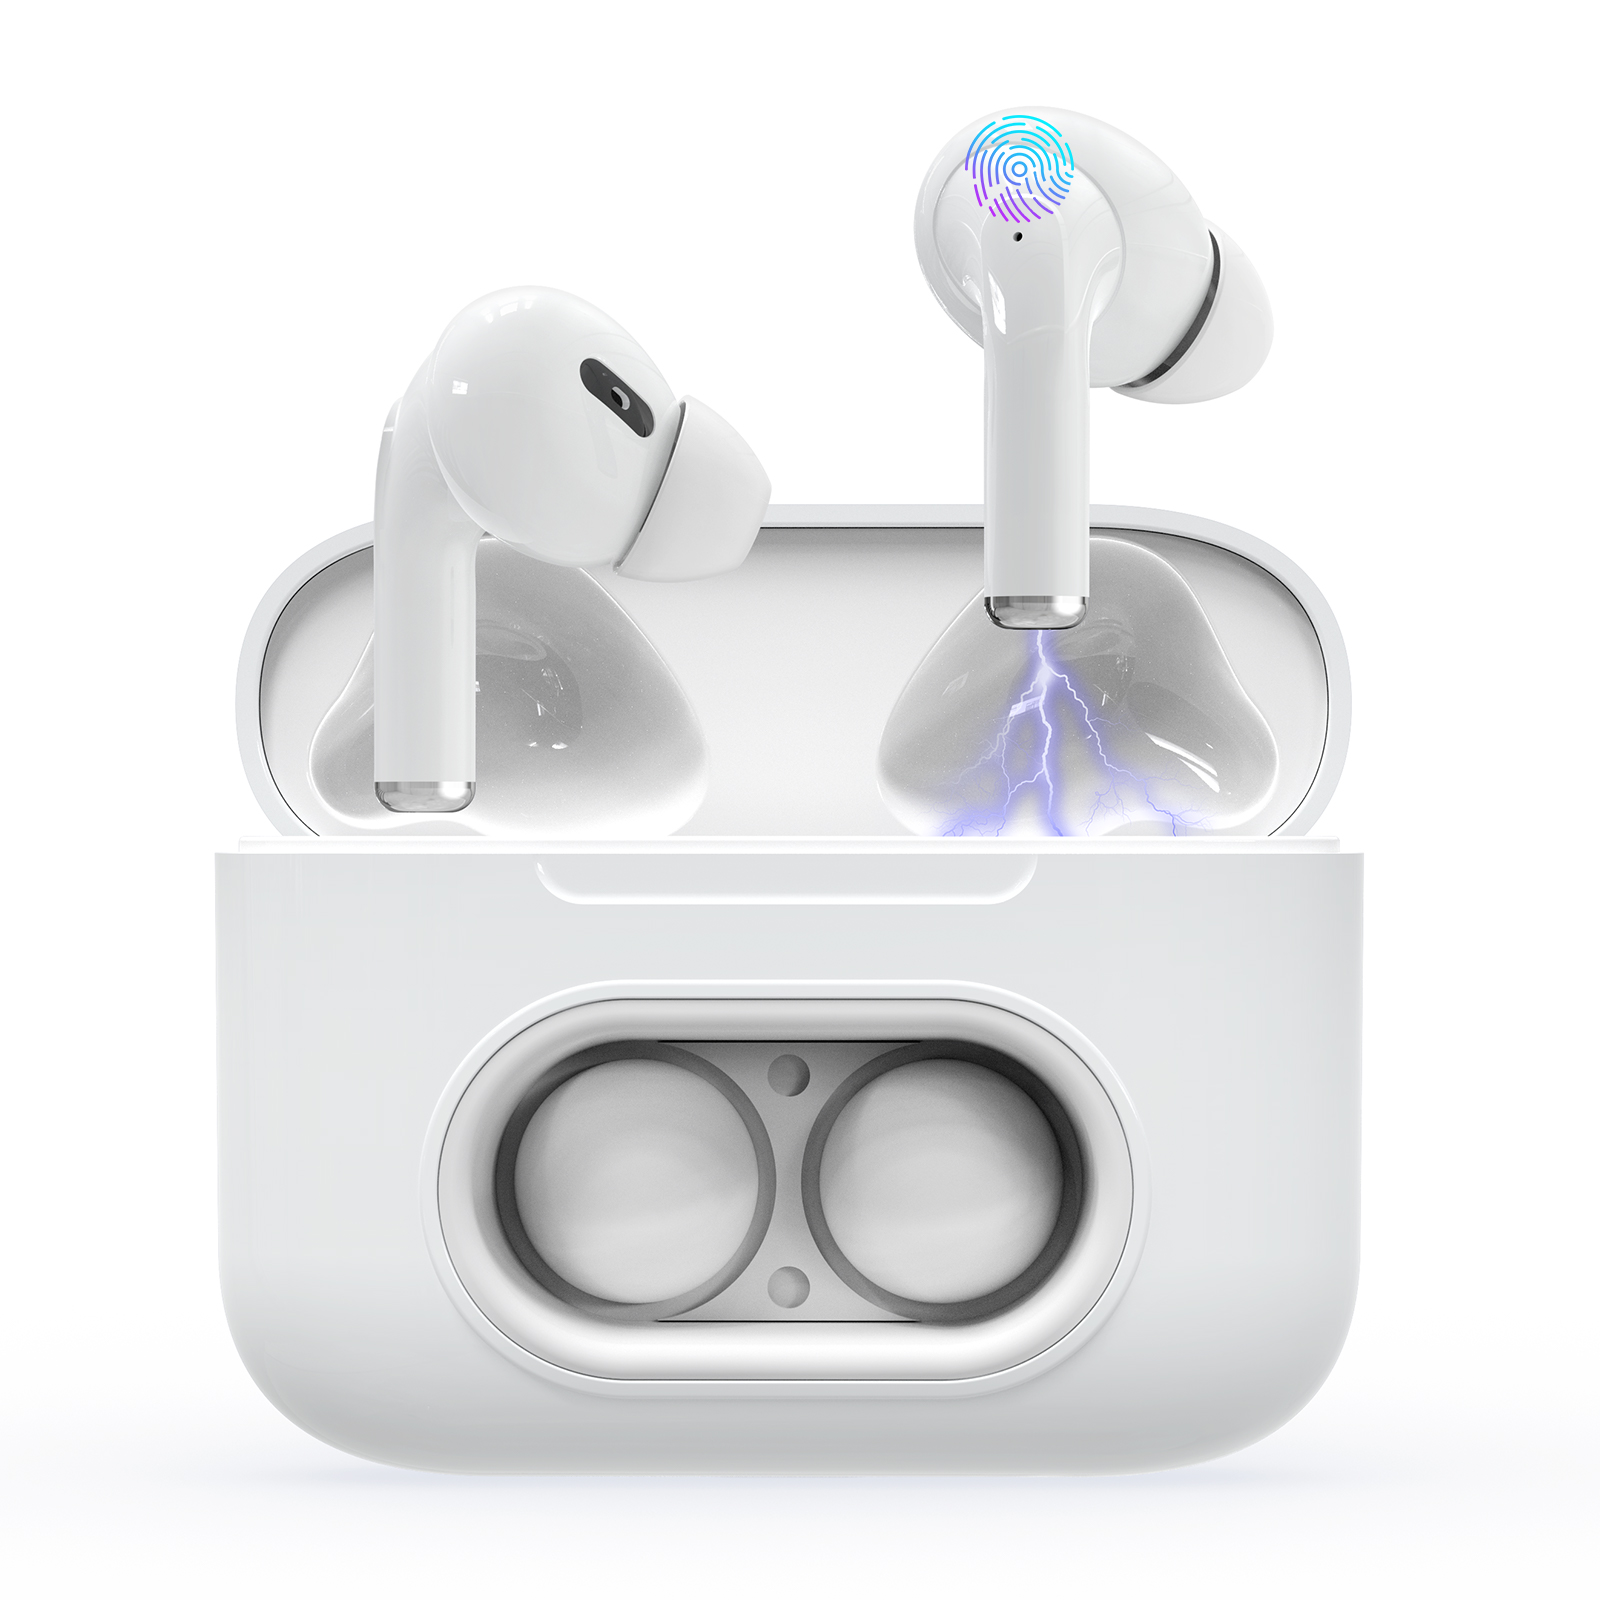 TWS Wireless Earbuds,Bluetooth Earburds Stereo, A5 Wireless Earphones with Mic Mini In-Ear Earbuds Earphones Earpiece